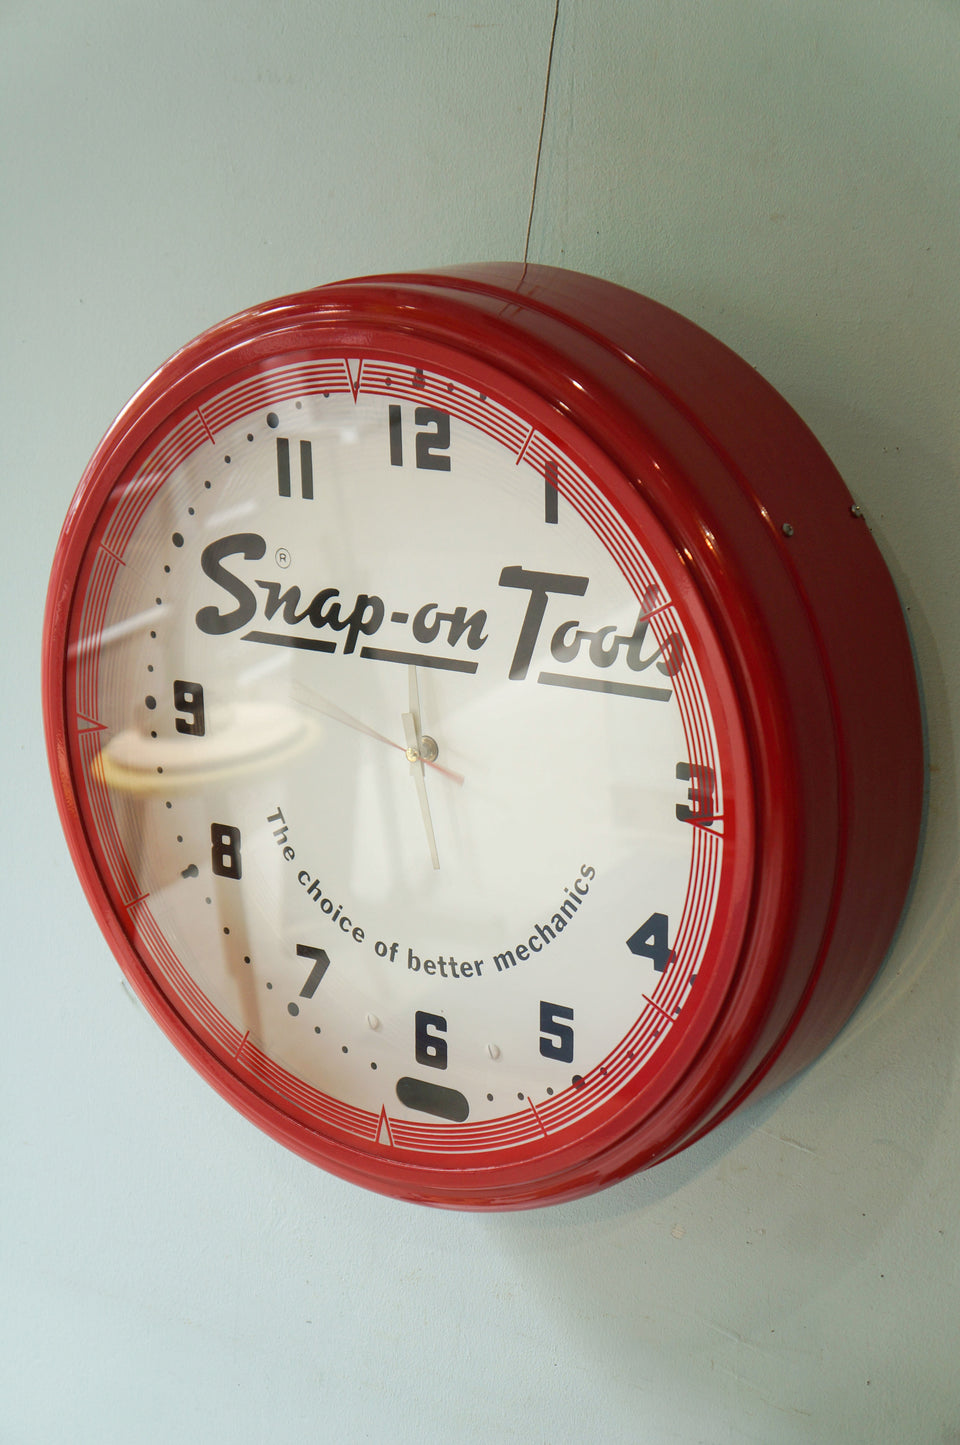 Snap-on Tools Wall Clock/スナップオン ウォールクロック 壁掛け時計 